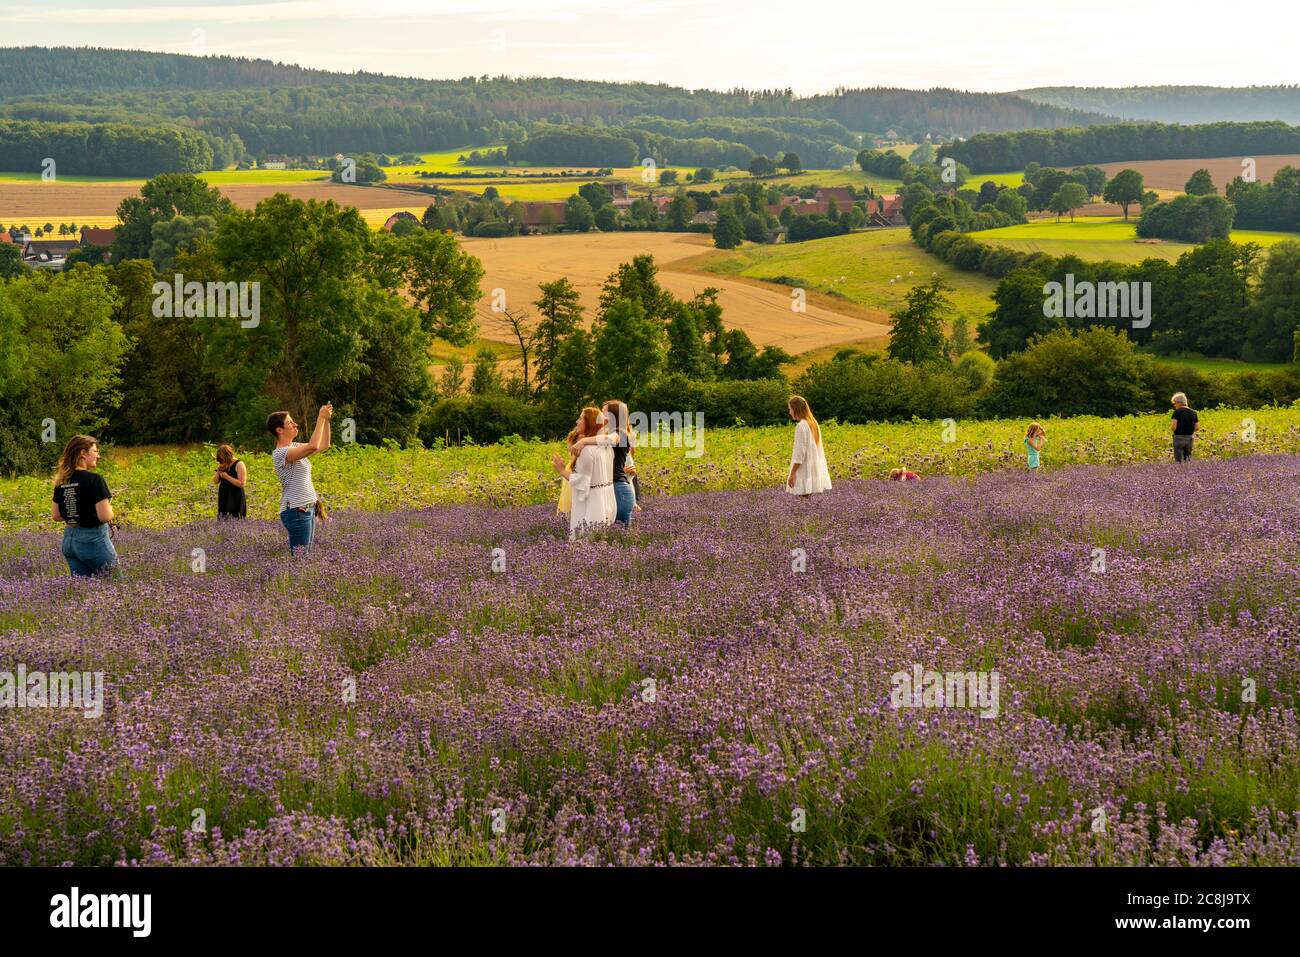 Lavendelfelder in Ostwestfalen Lippe, OWL, beim Dorf Fromhausen, bei Detmold, die Firma Taoasis, pflanzt seit 2017 Bio-Lavendel an, zur Gewinnung von Stock Photo